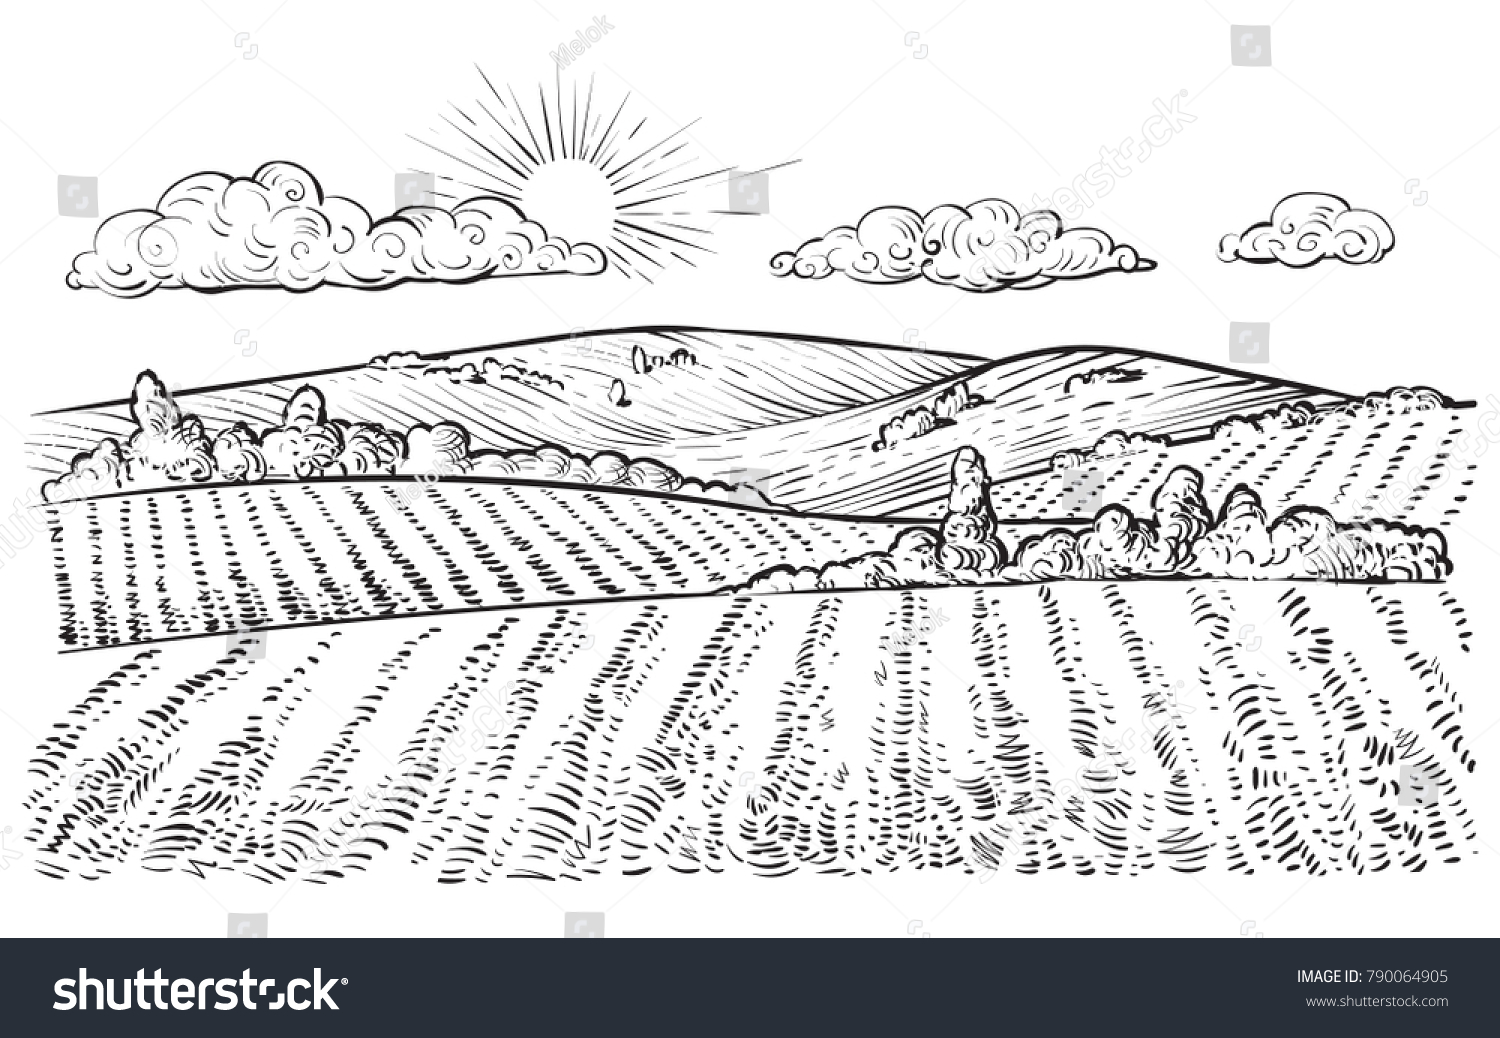 Сельскохозяйственный ландшафт нарисованный